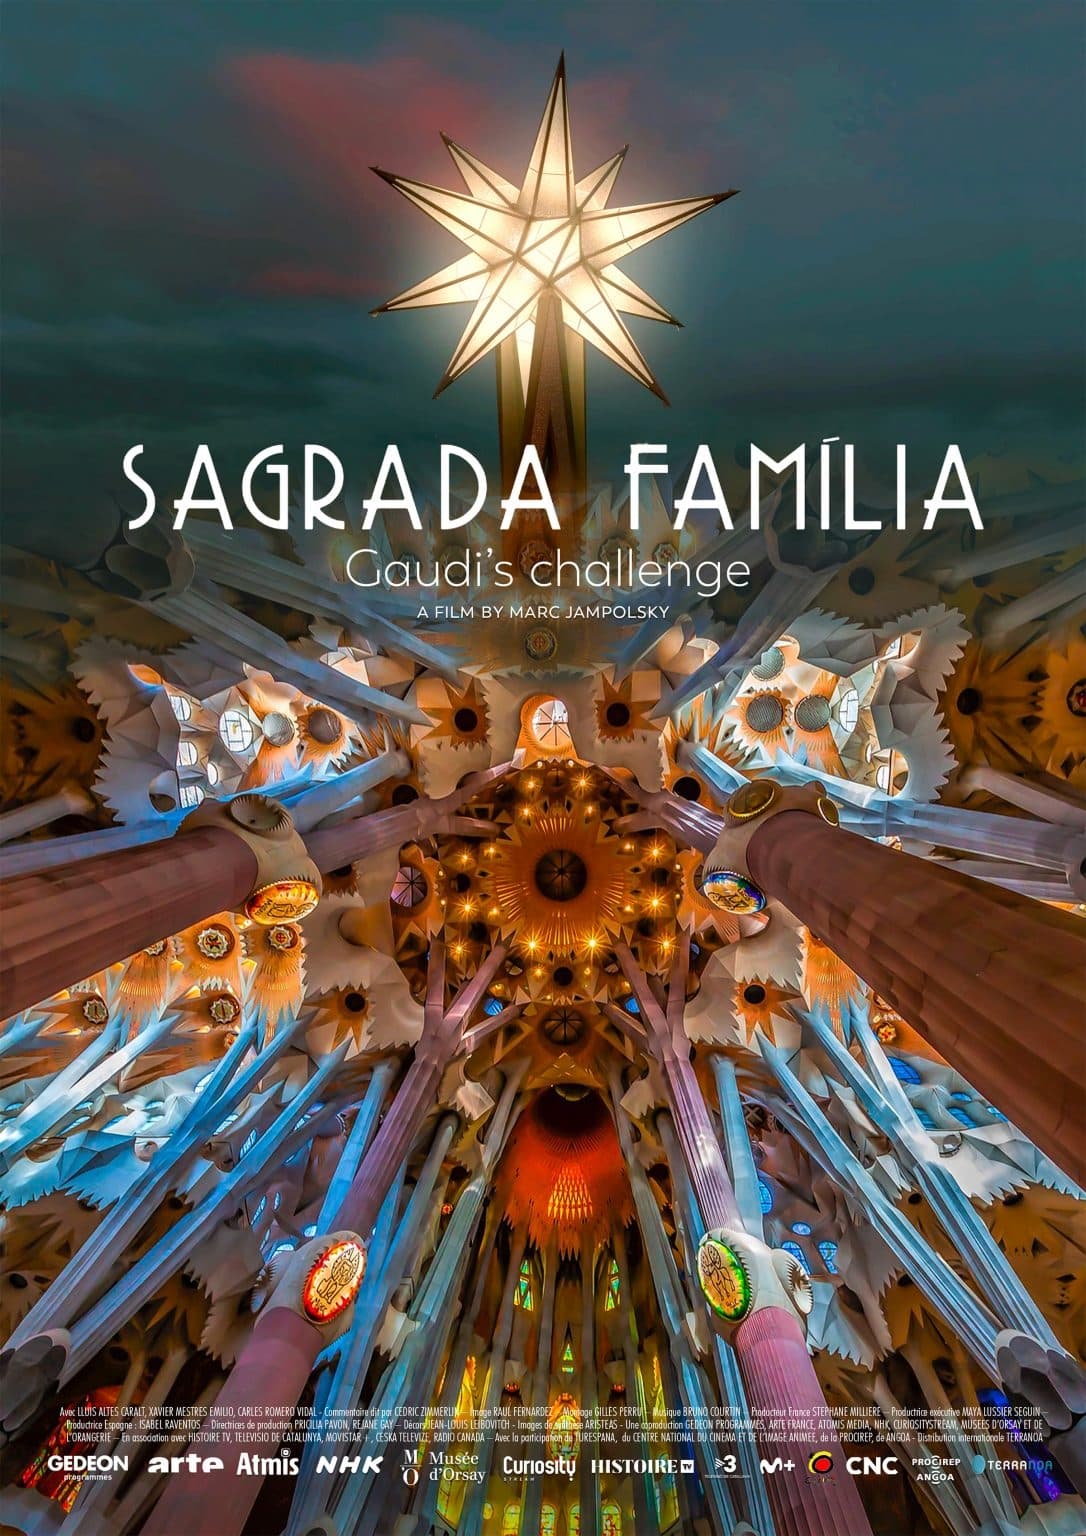 Sagrada Familia - Gaudi's challenge